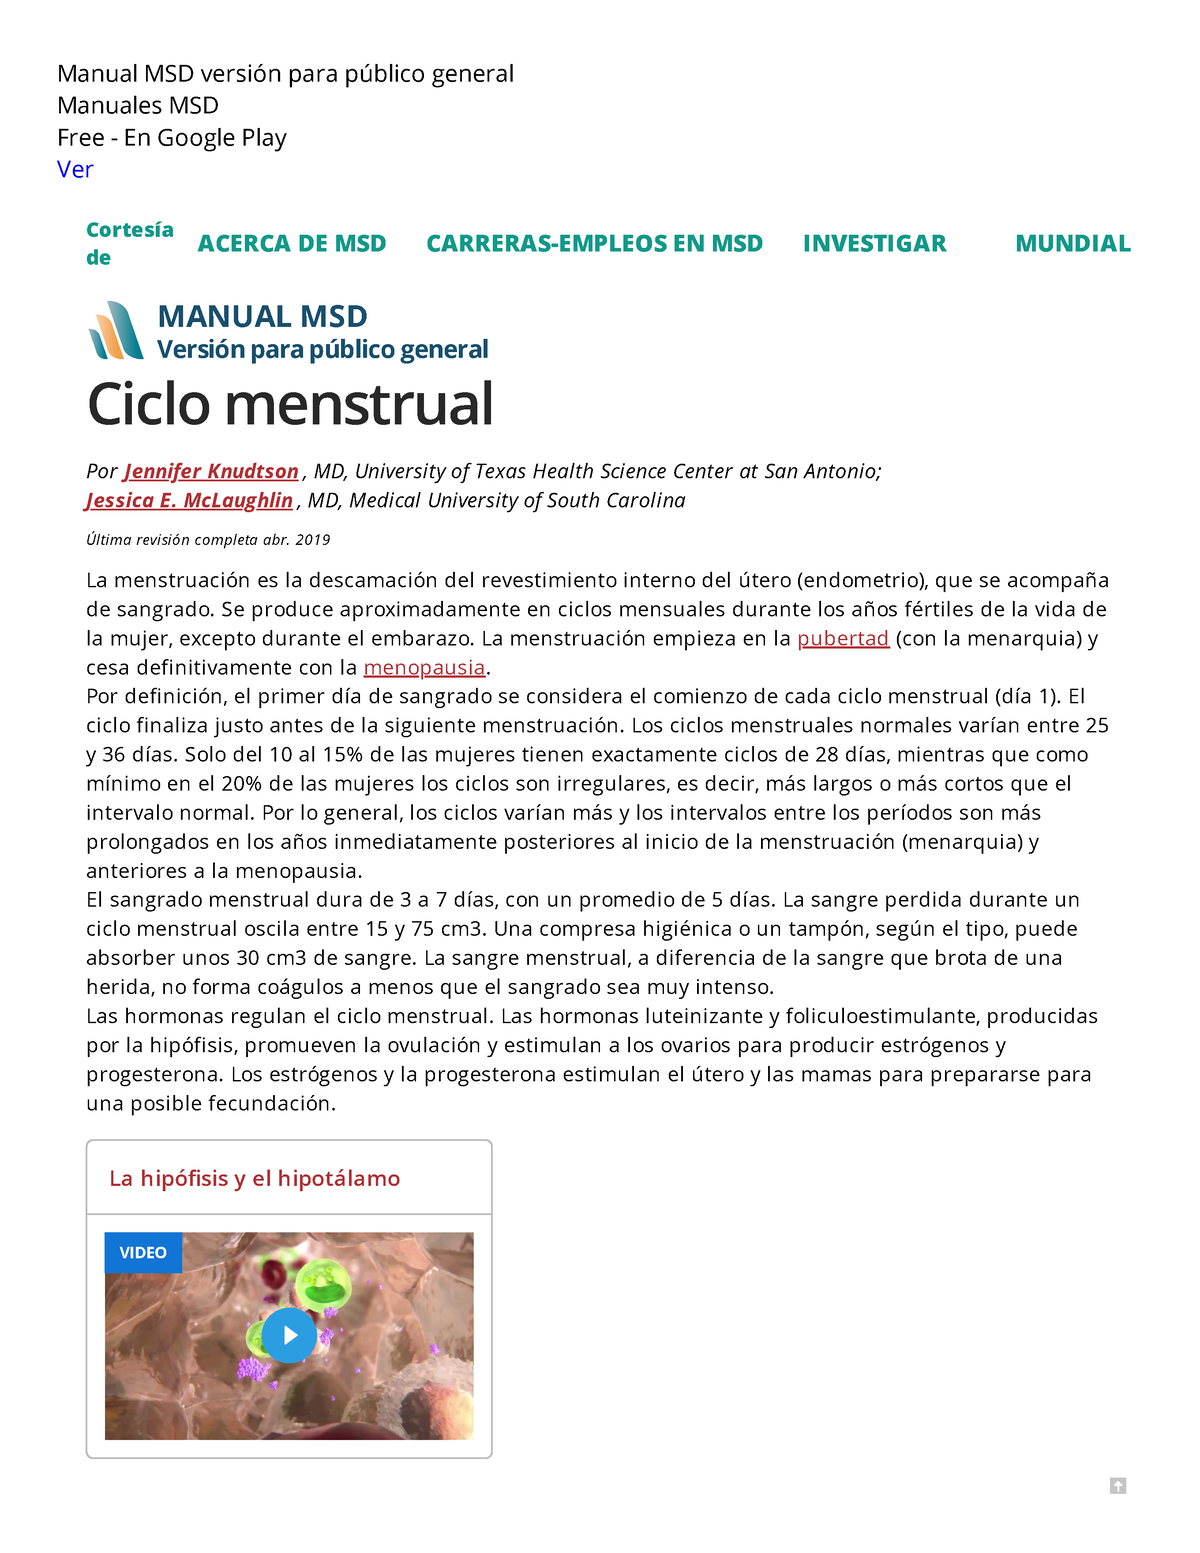 Ciclo Menstrual Salud Femenina Manual Msd Versión Para Público General Manual Msd Versión 1149